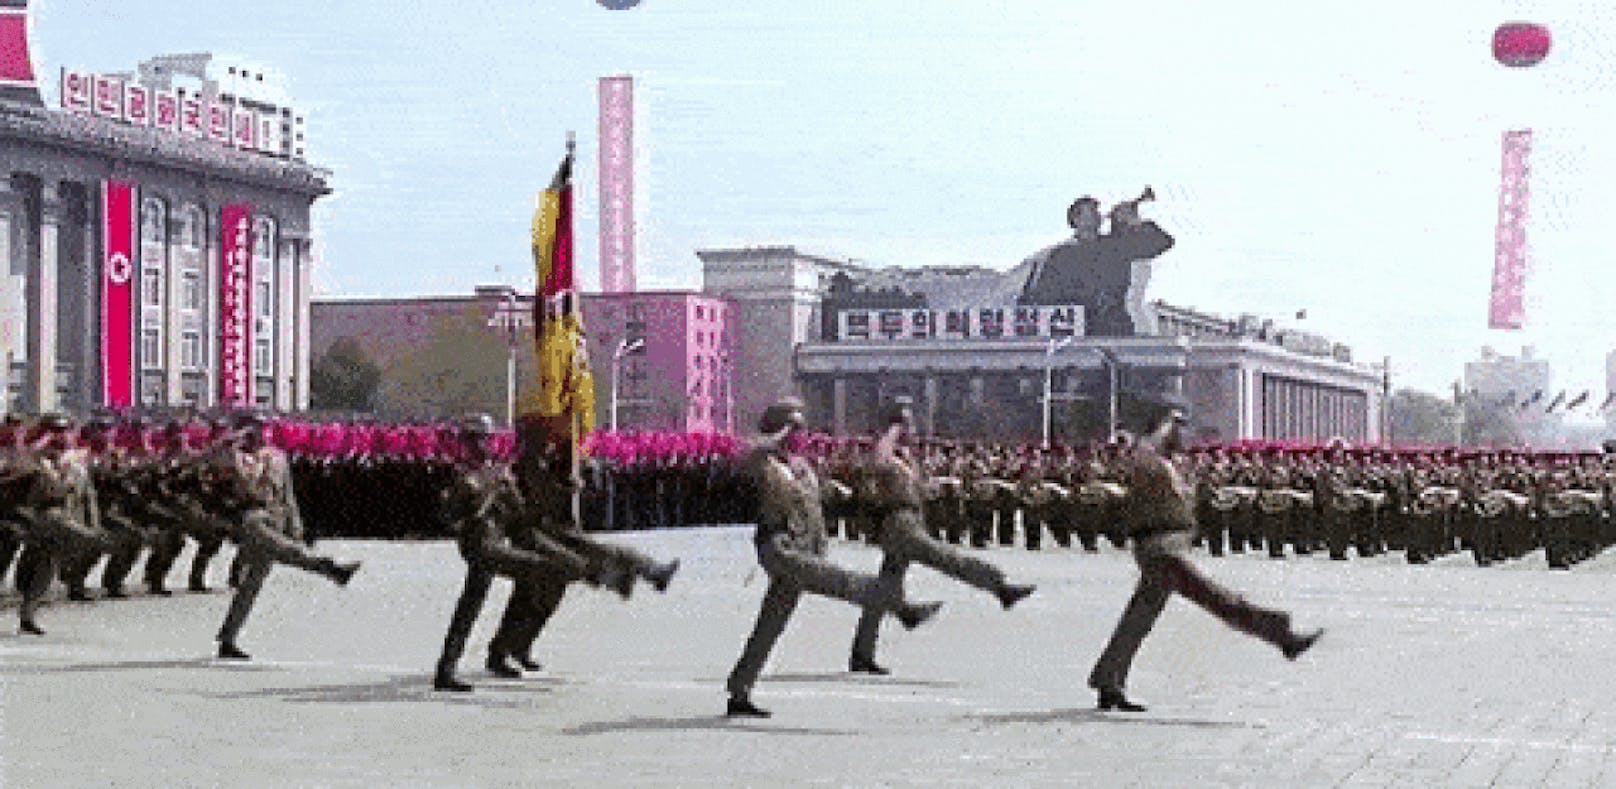 Viel K(l)imbim:  Nordkorea feiert und provoziert